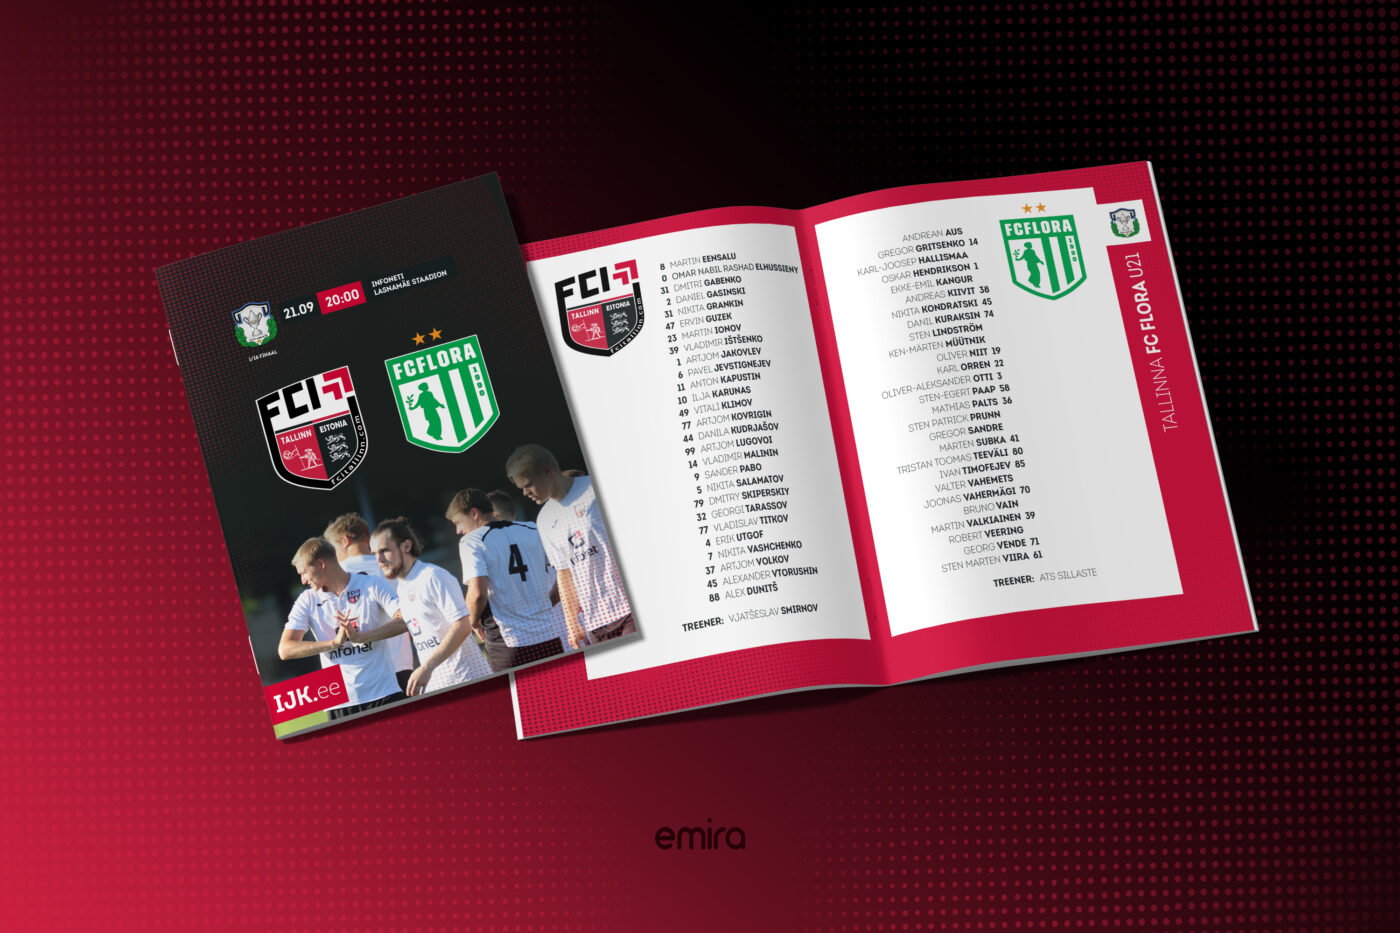 Команда Emira Studio разработала специальный буклет к матчу футбольного клуба FCI Tallinn